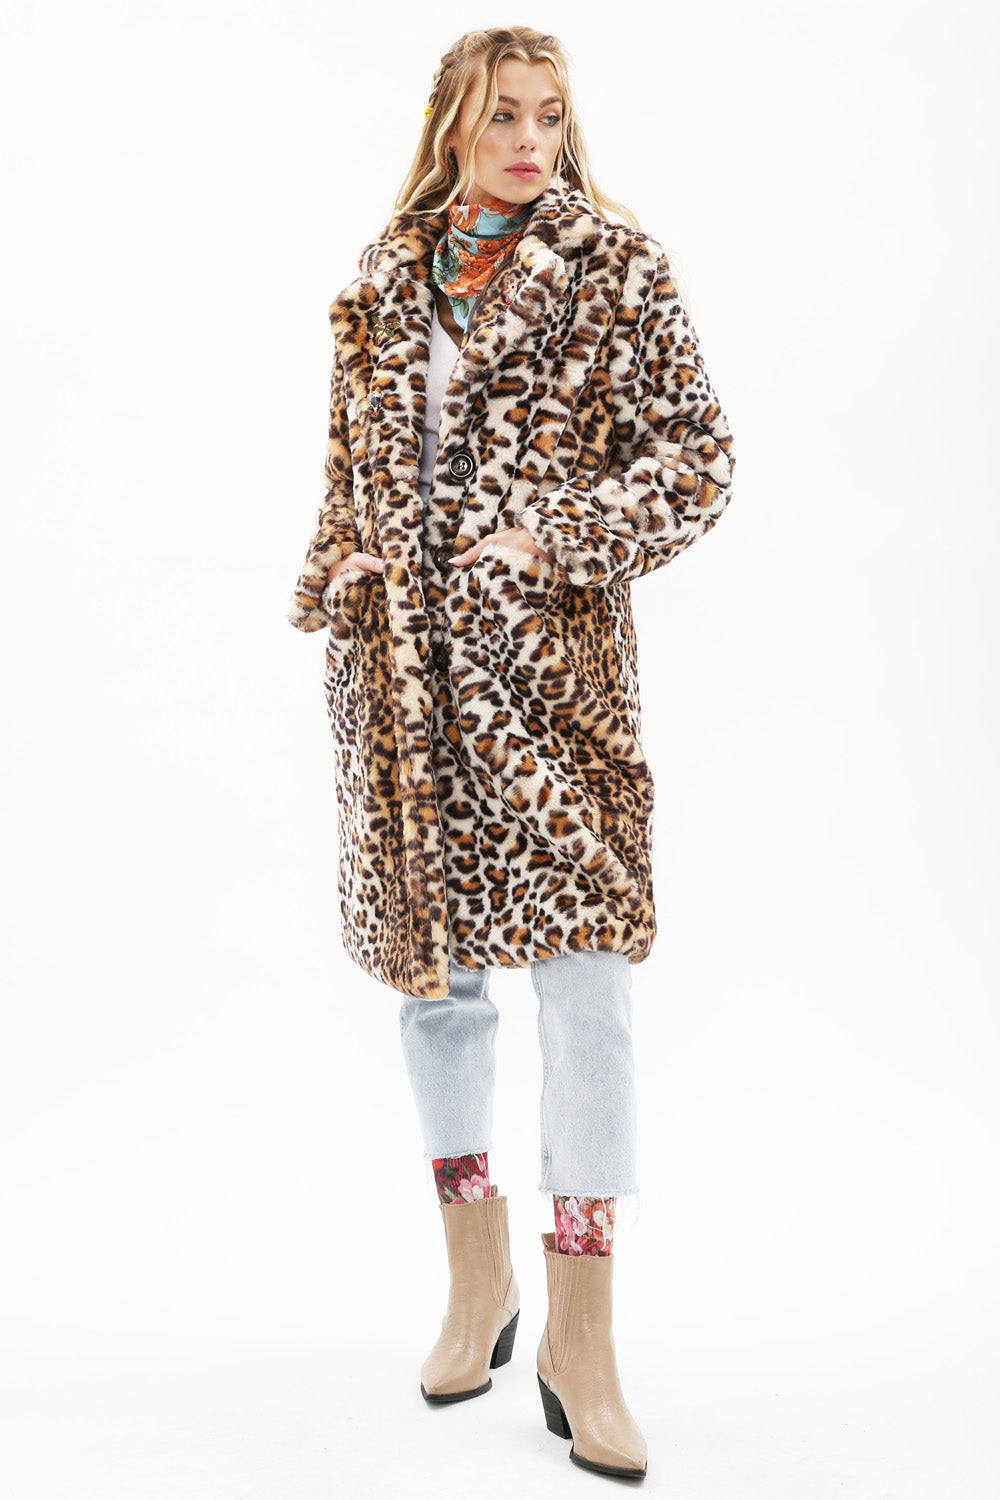 Leopard Faux Fur Coat by Aratta